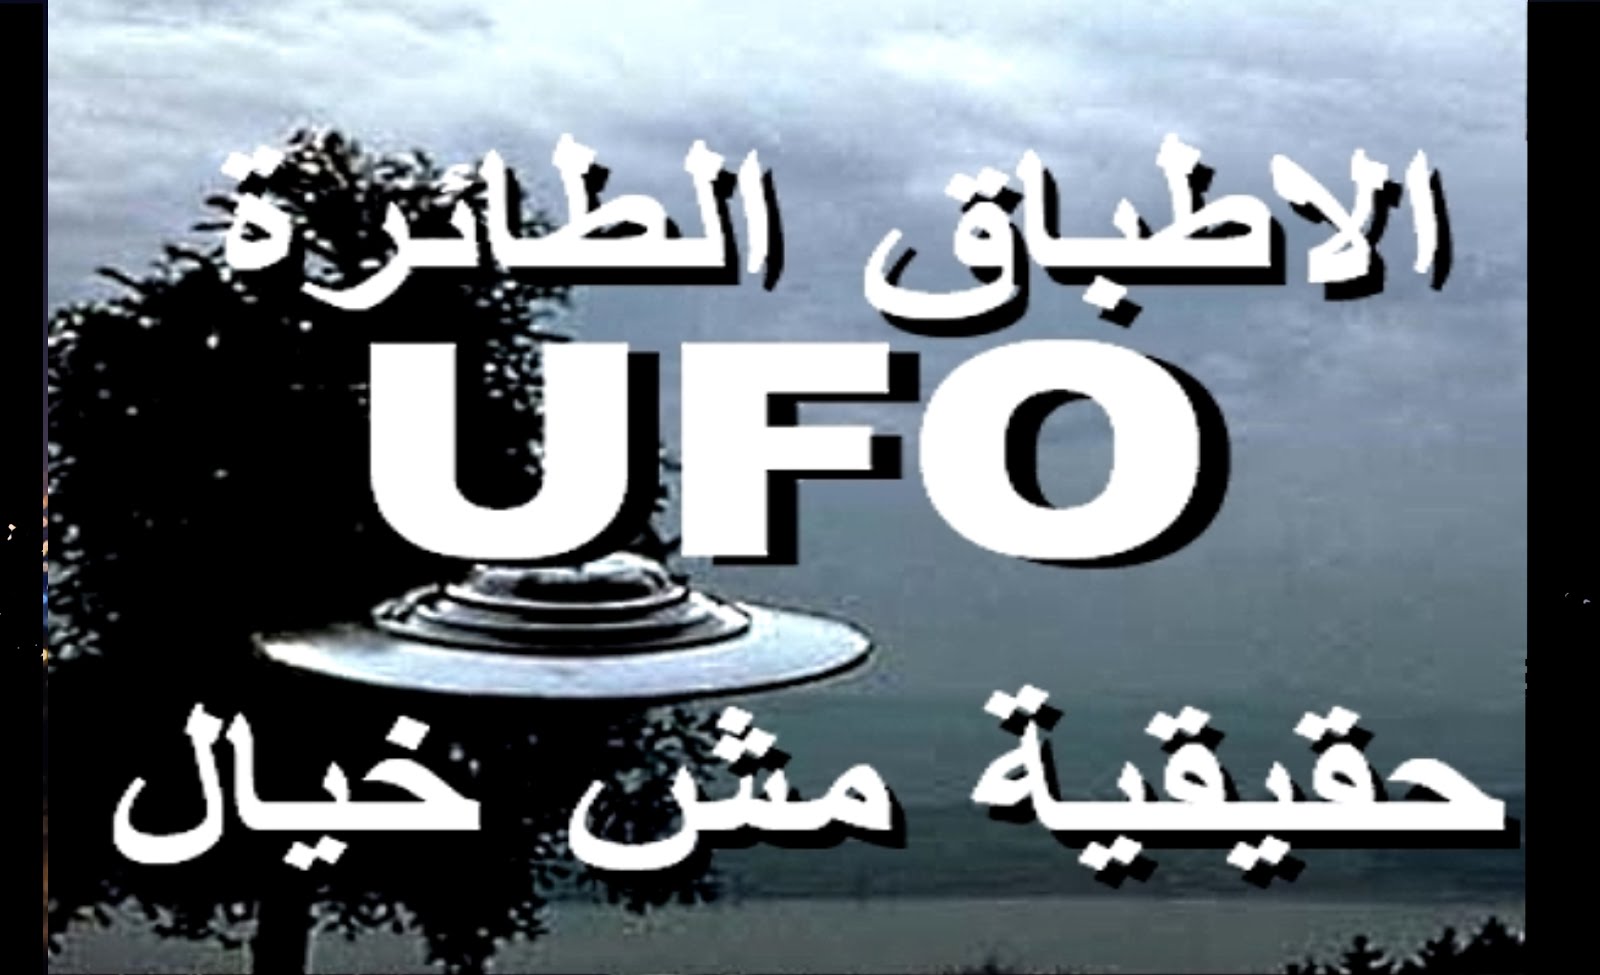 الاطباق الطائرة ufo حقيقية مش خيال